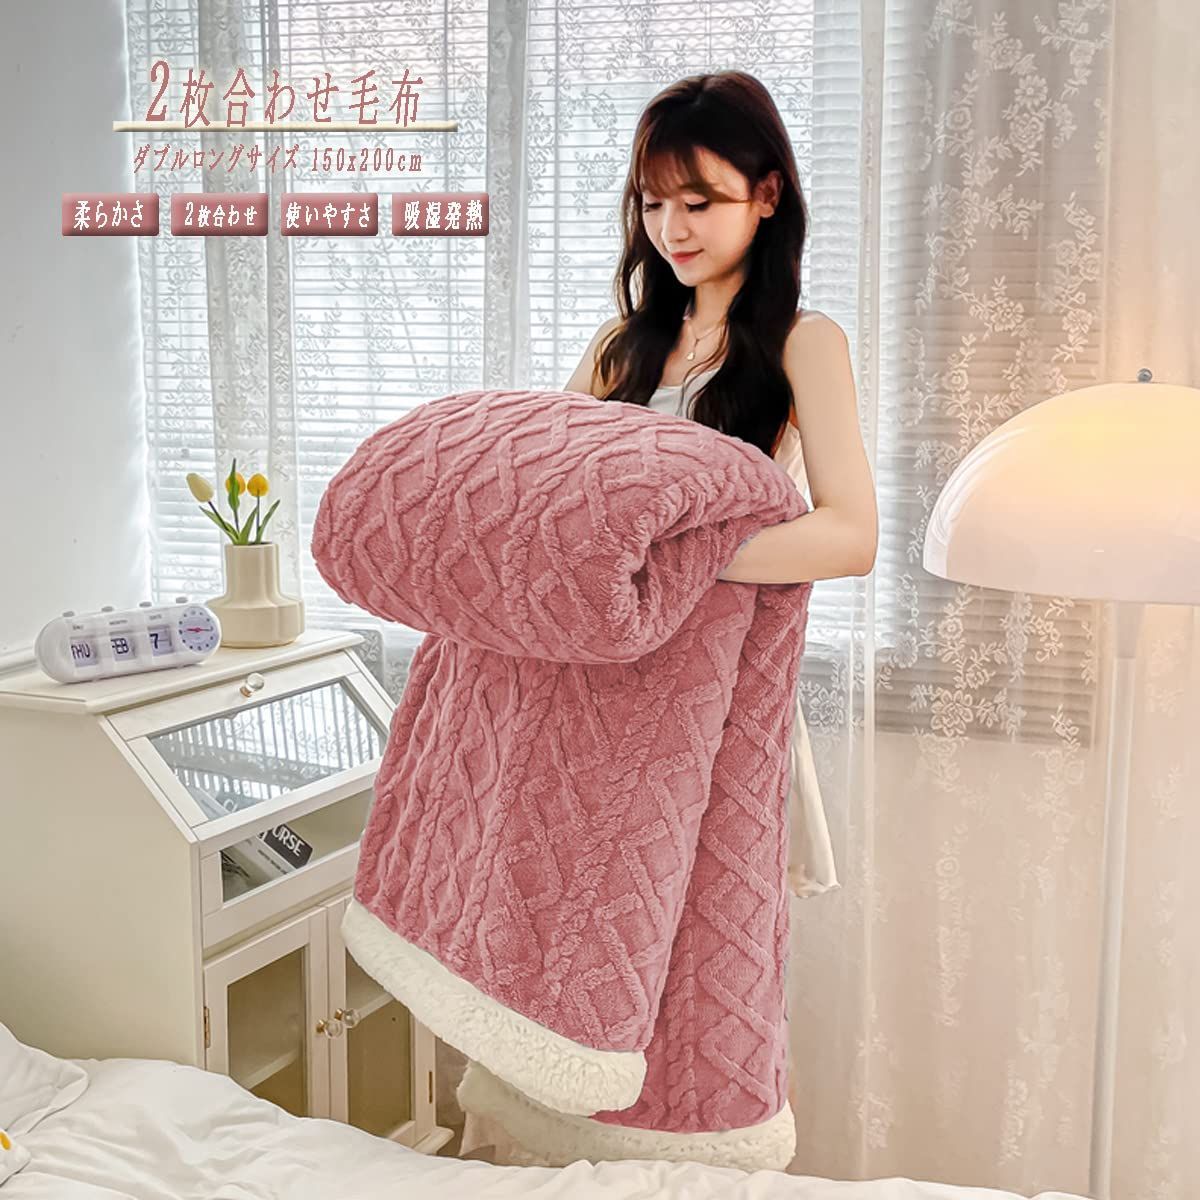 東京 西川 ウール毛布 シングル 洗える ウール100% 日本製 やわらか なめらか 無地 ピンク FQ09013000P